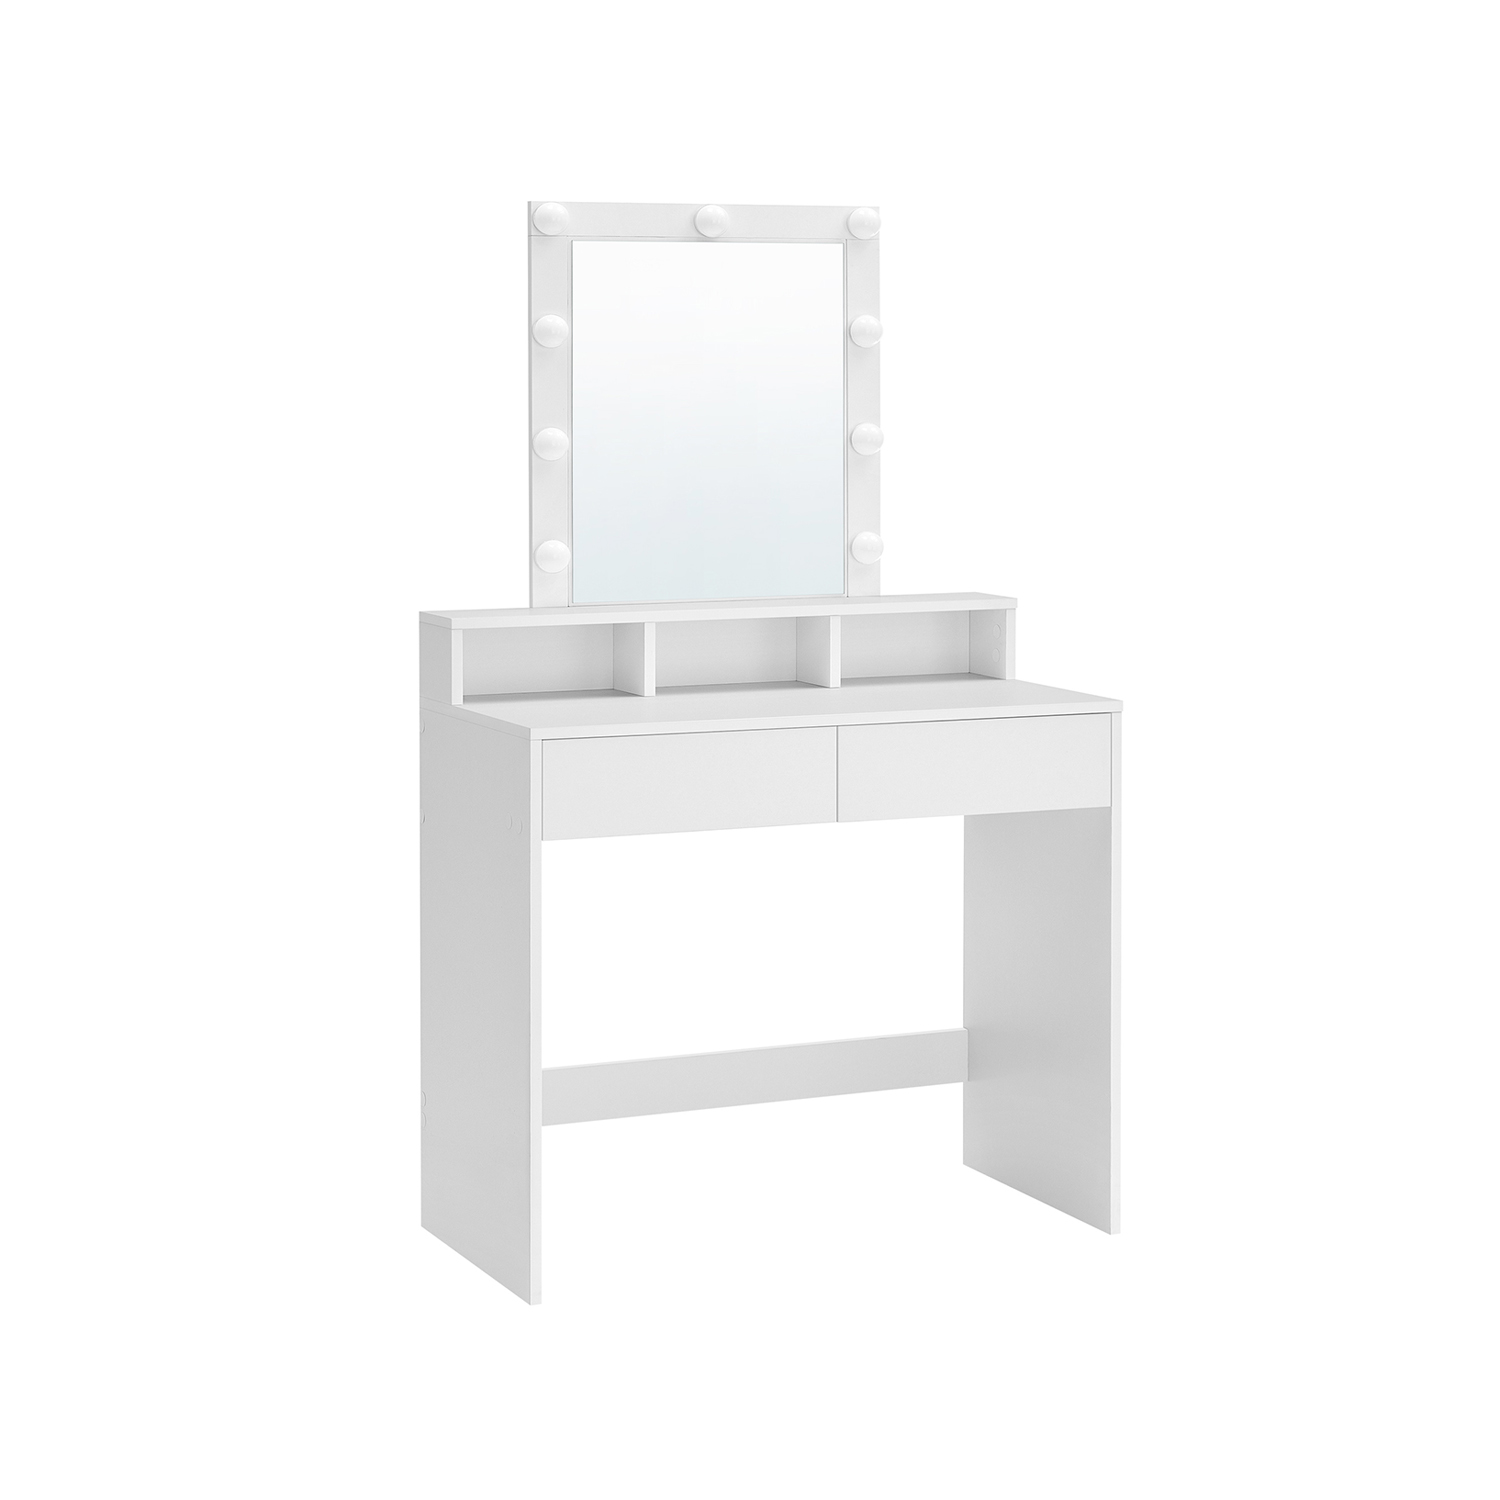 Kaptafel met spiegel en verlichting – Make up tafel – Kaptafel met spiegel – Inclusief kruk – 80 x 40 x 145 cm – Wit